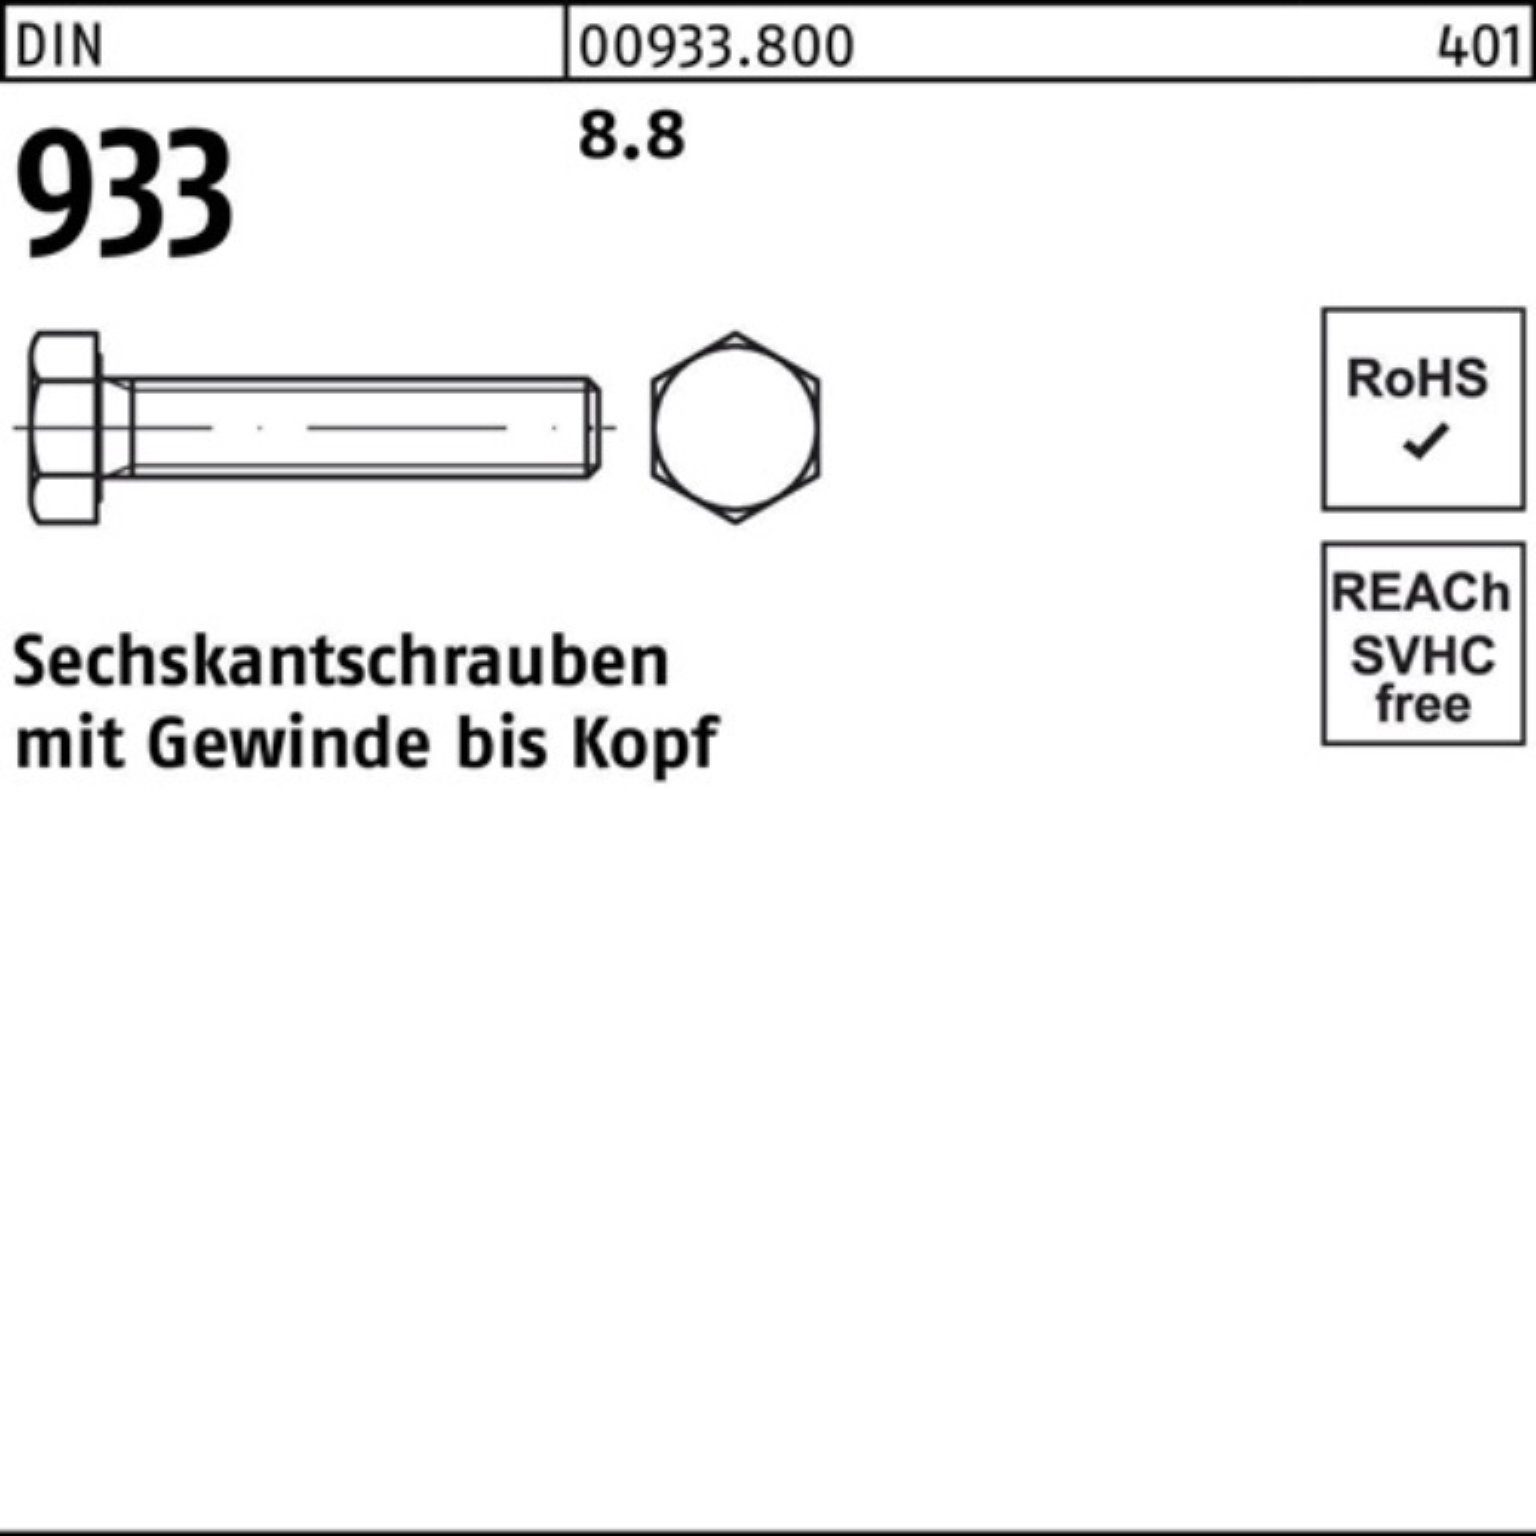 933 DIN 100er M39x 933 DIN Stück Sechskantschraube 8.8 Pack Reyher VG 8 1 90 Sechskantschraube